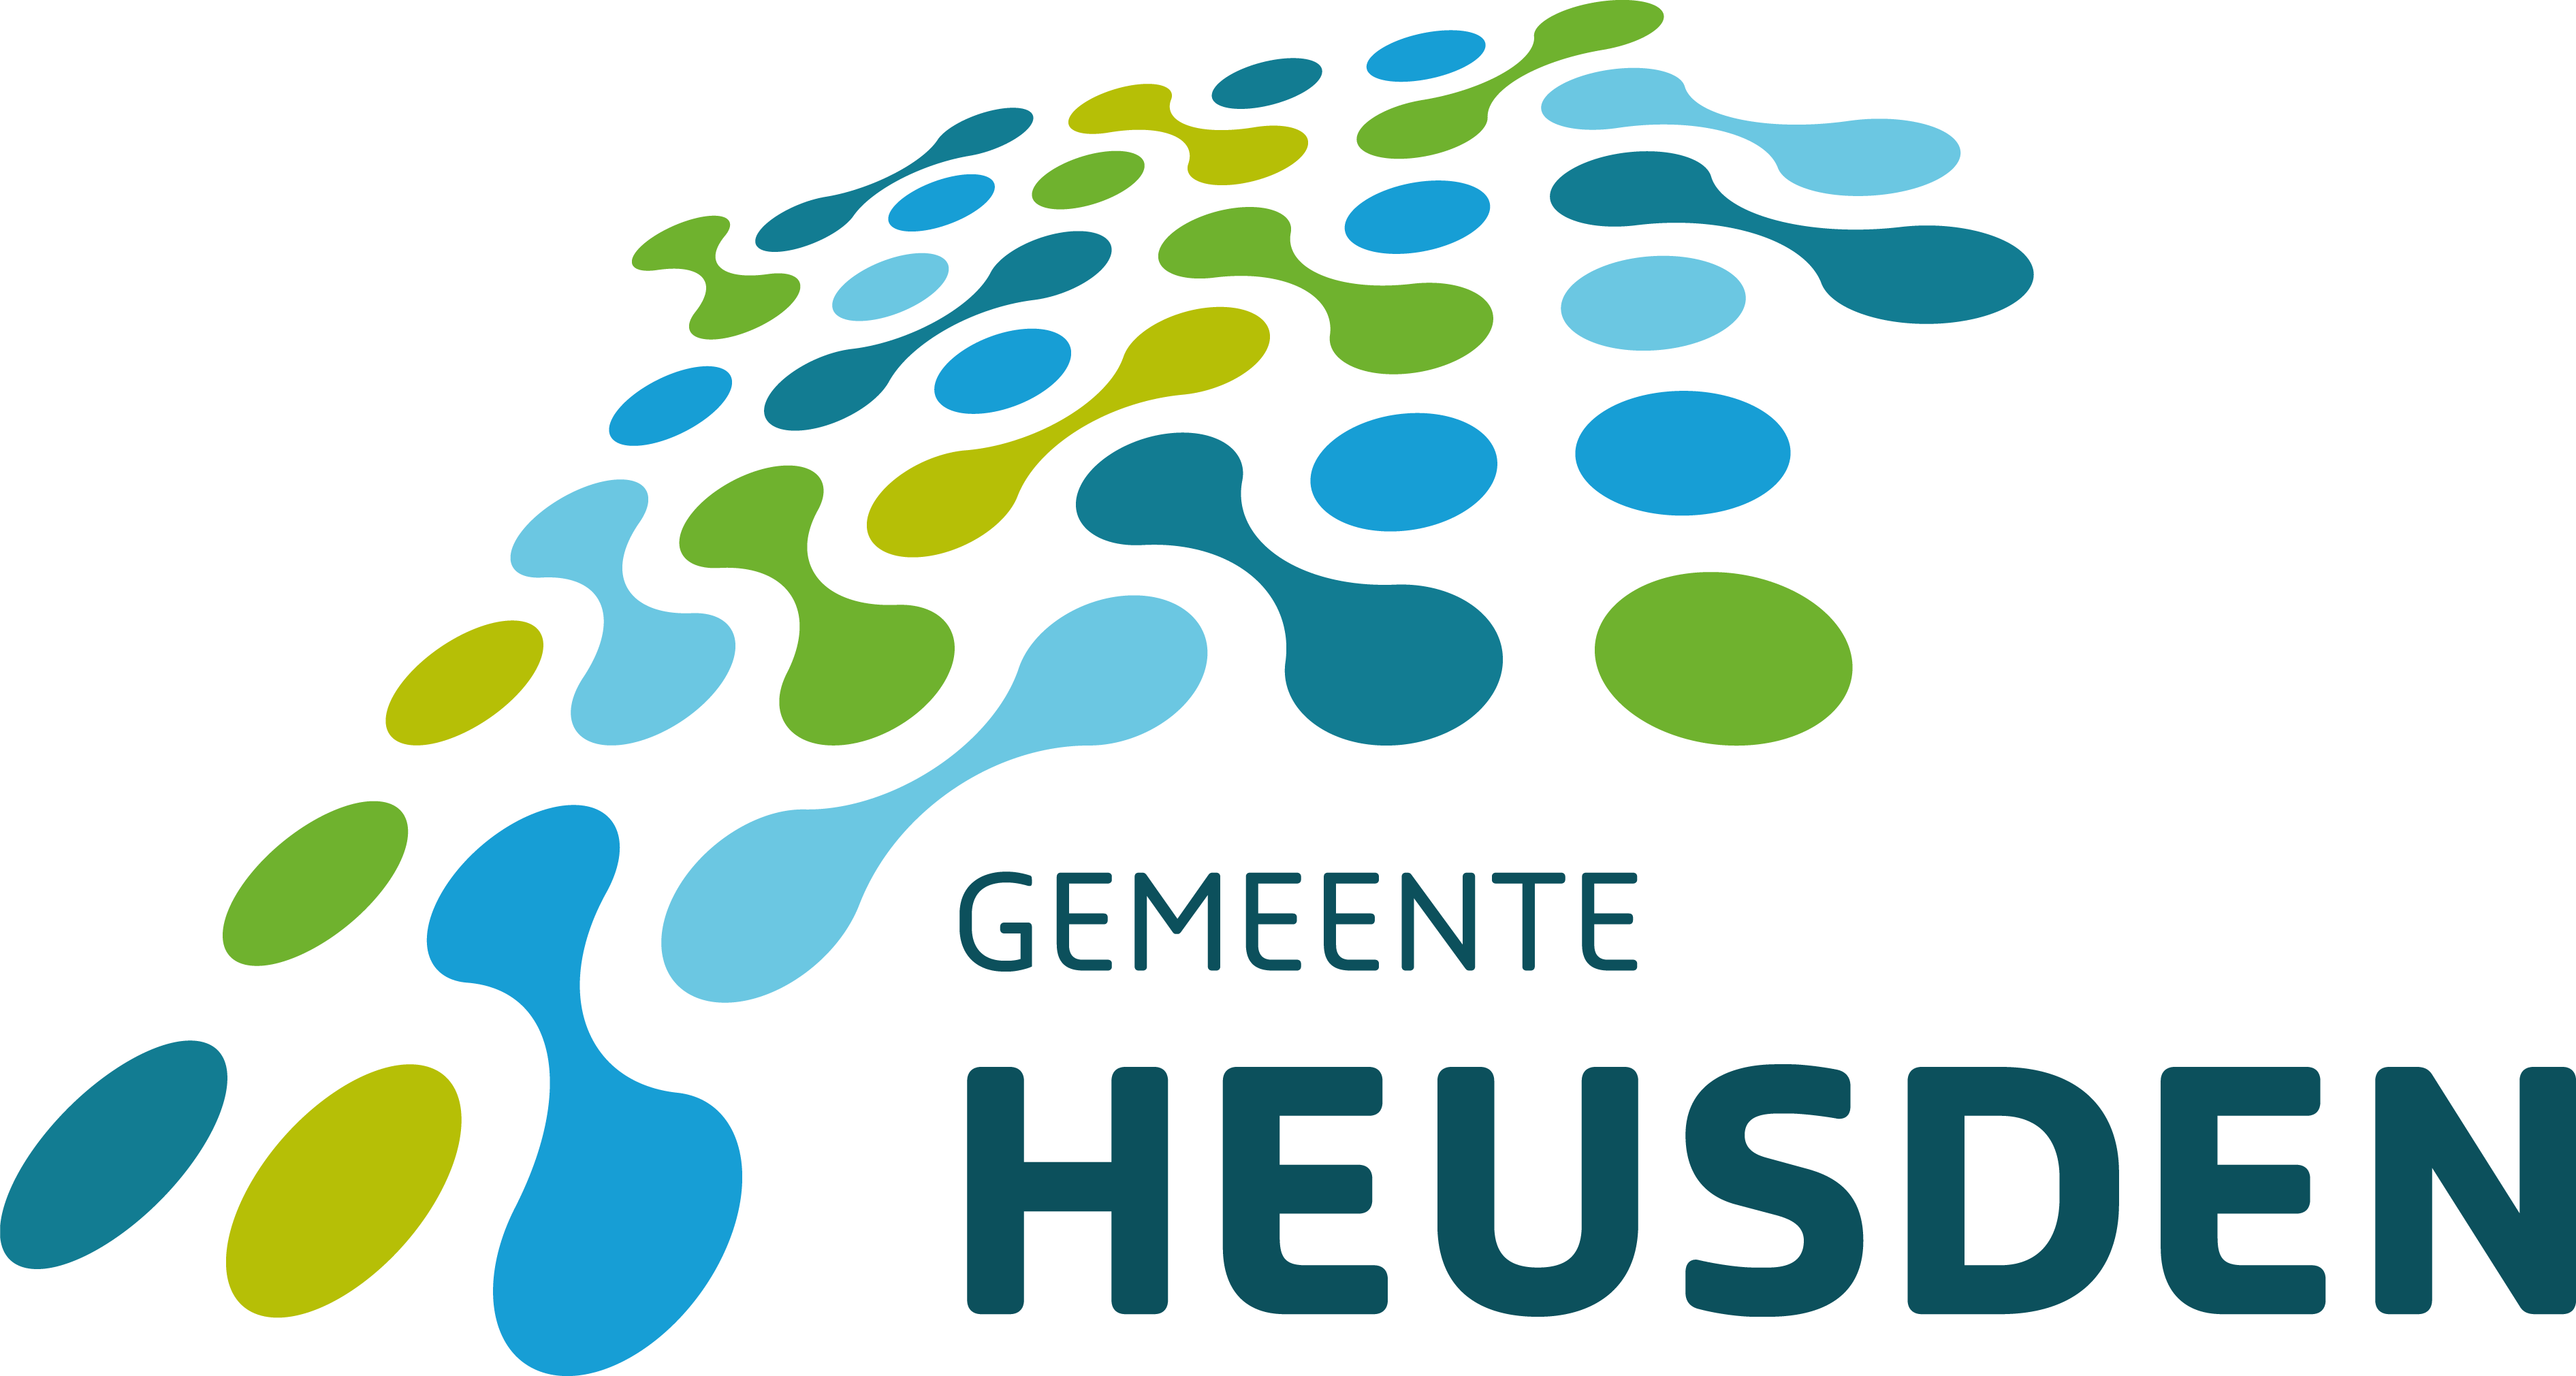 Logo Heusden